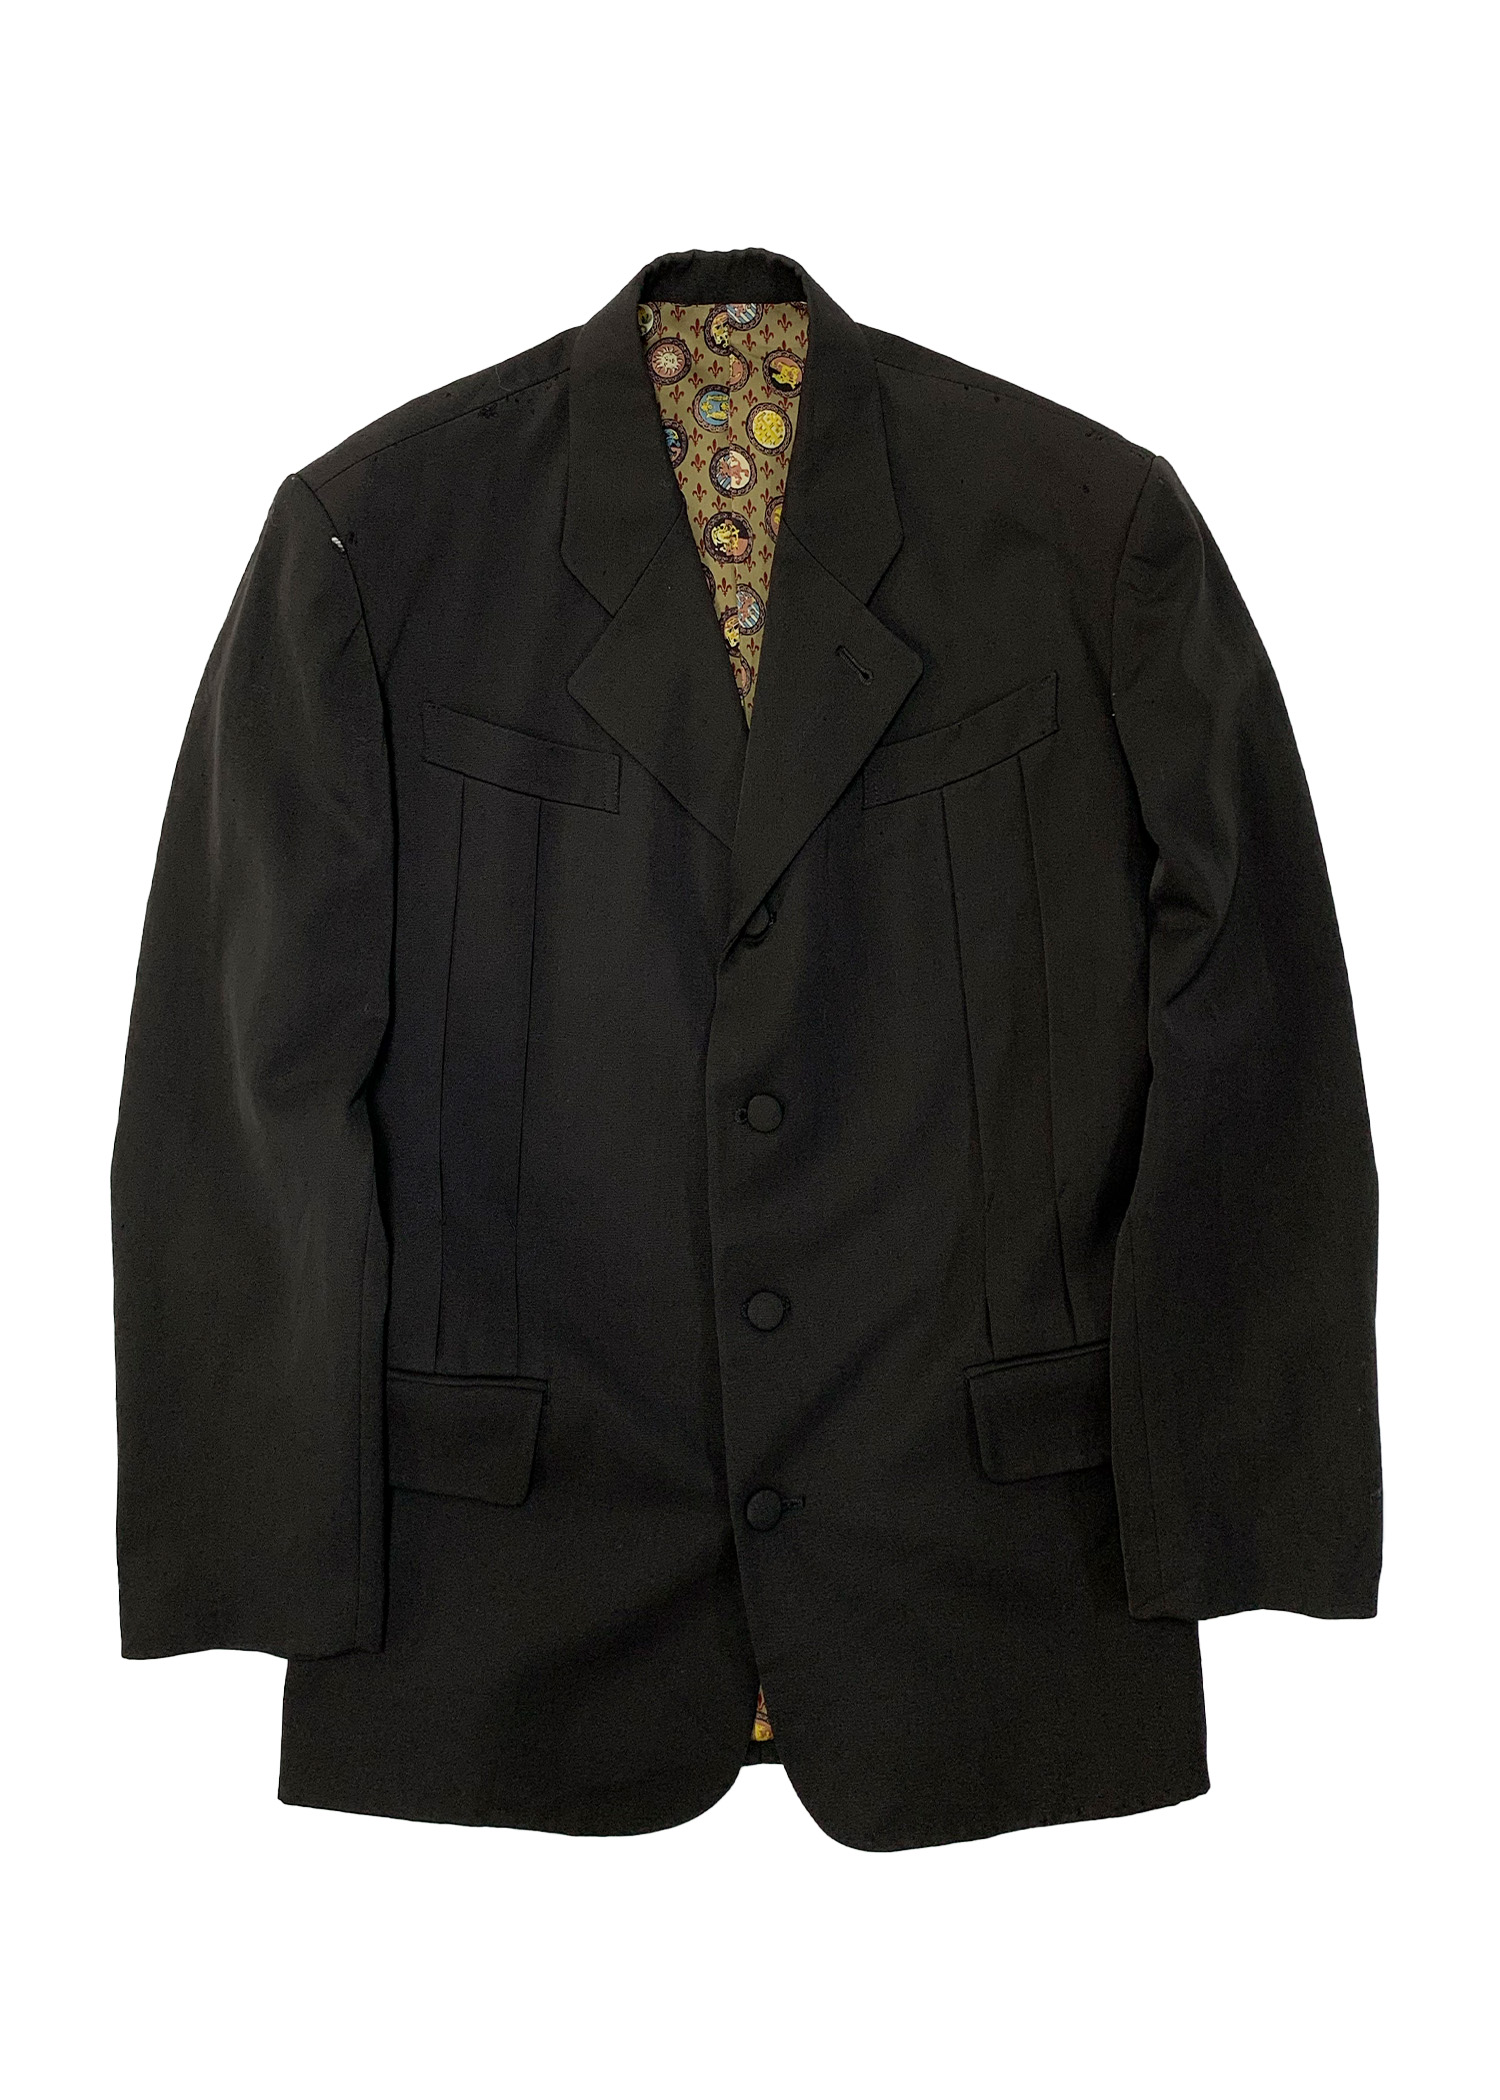 Jean Paul Gaultier jacket